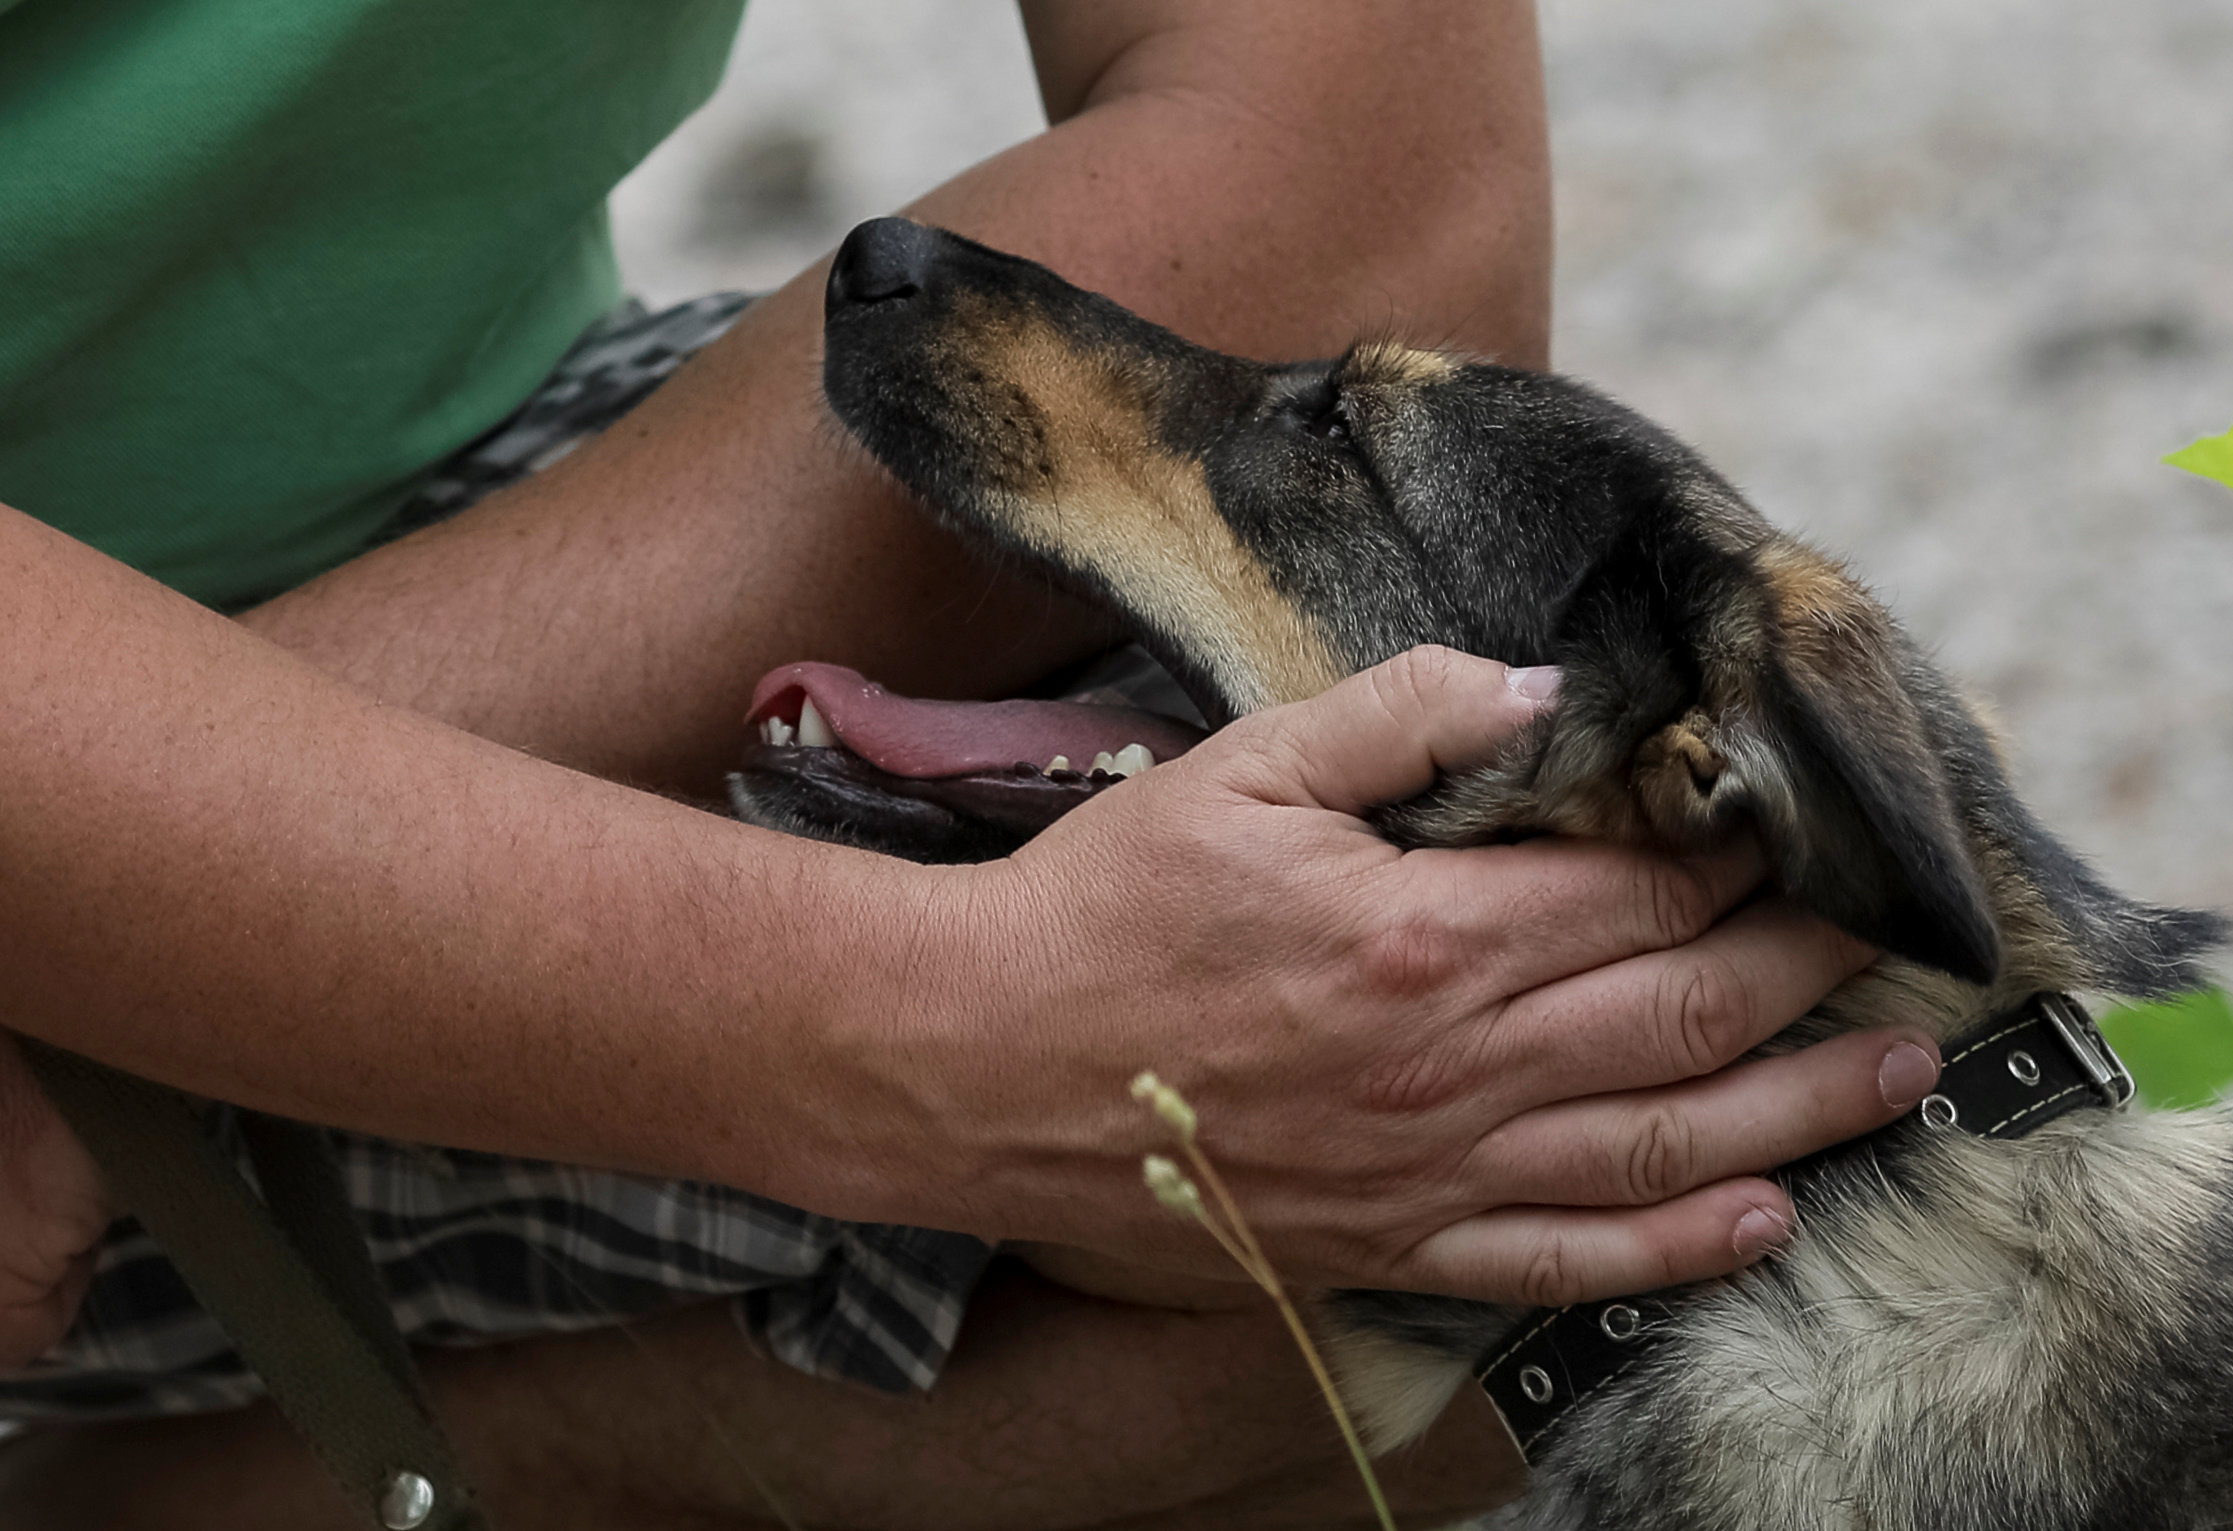 Νέα Ζηλανδία: Γονείς έδωσαν κατά λάθος σκυλοτροφή στα παιδιά τους